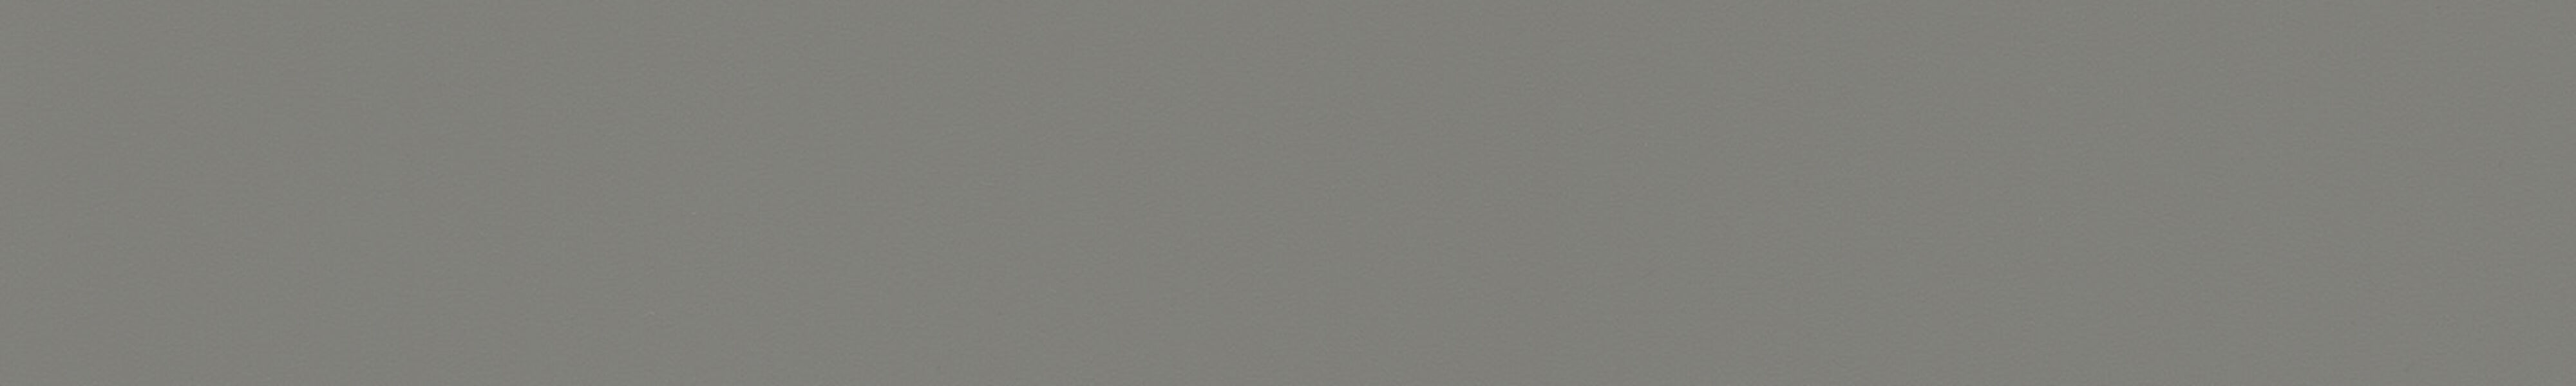 skai® colore classico arktisgrau         0,40 1420